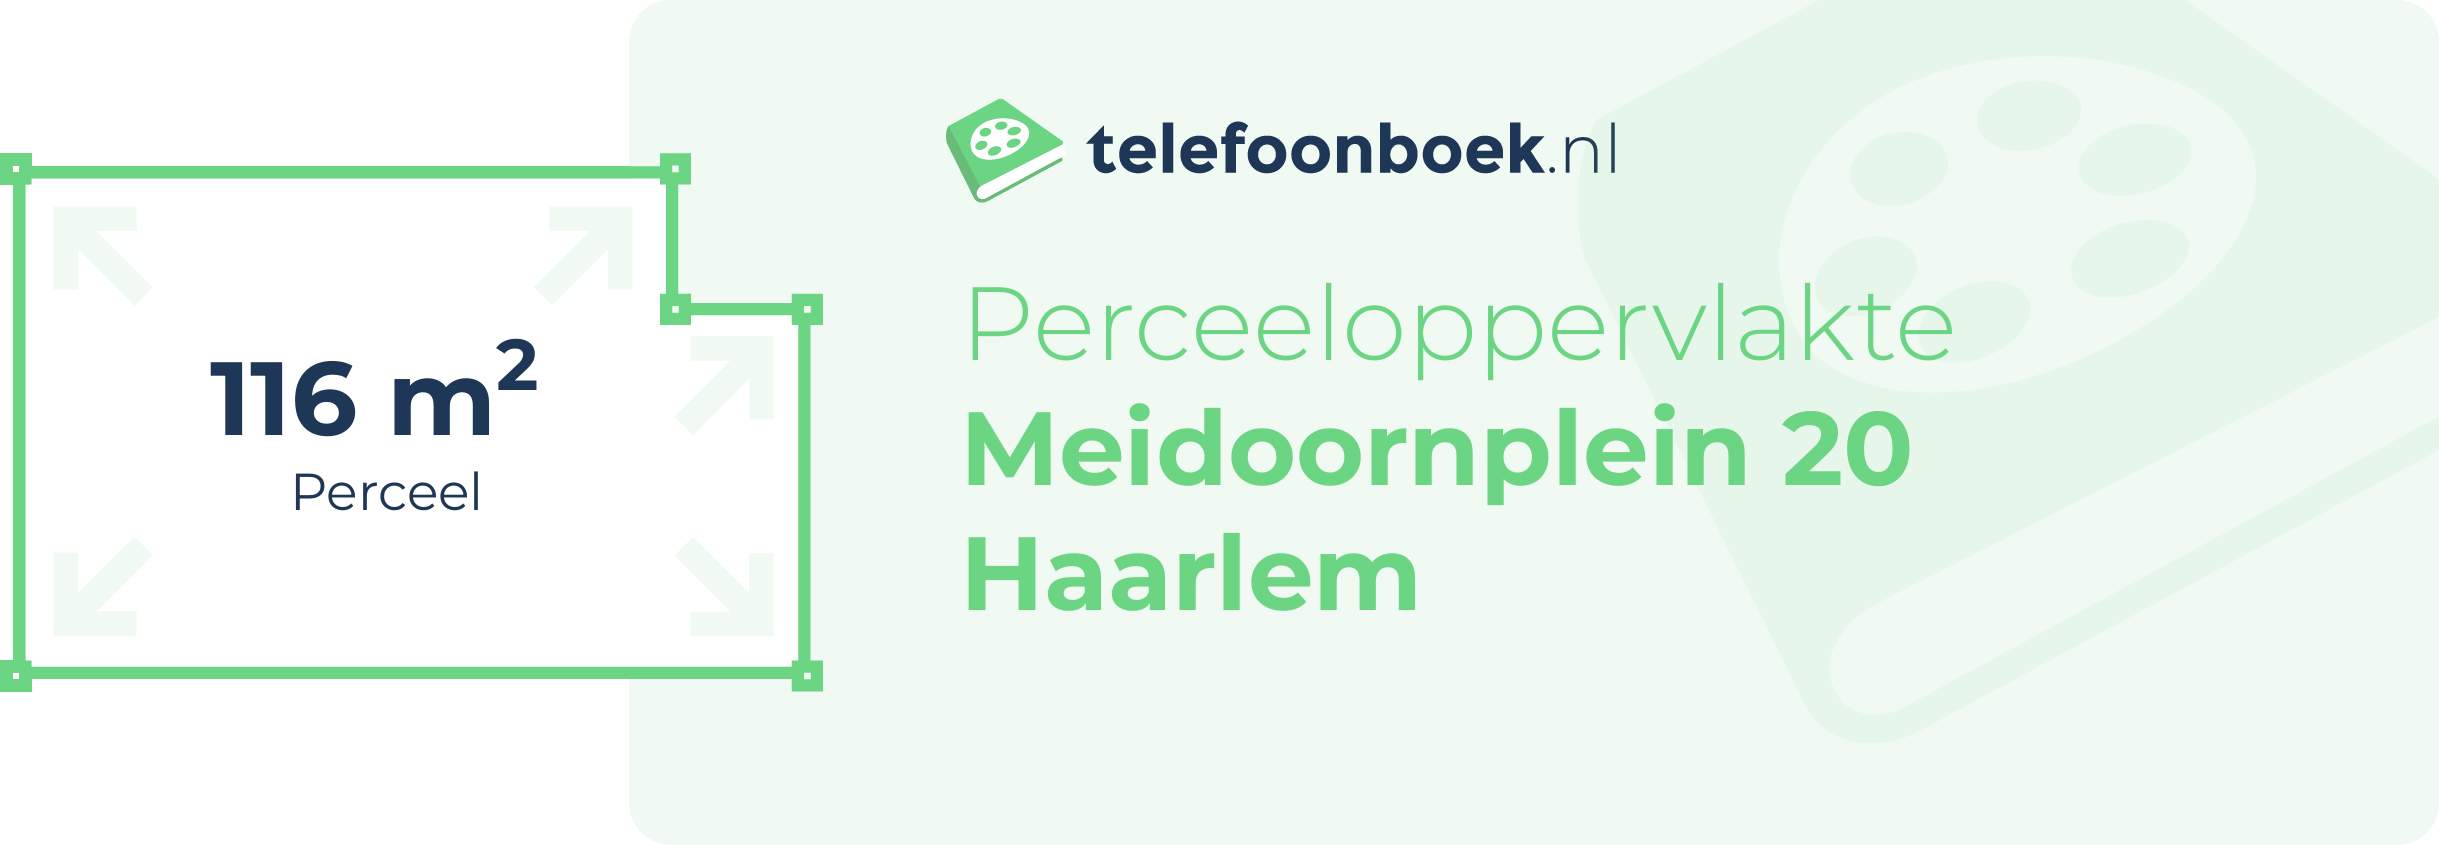 Perceeloppervlakte Meidoornplein 20 Haarlem